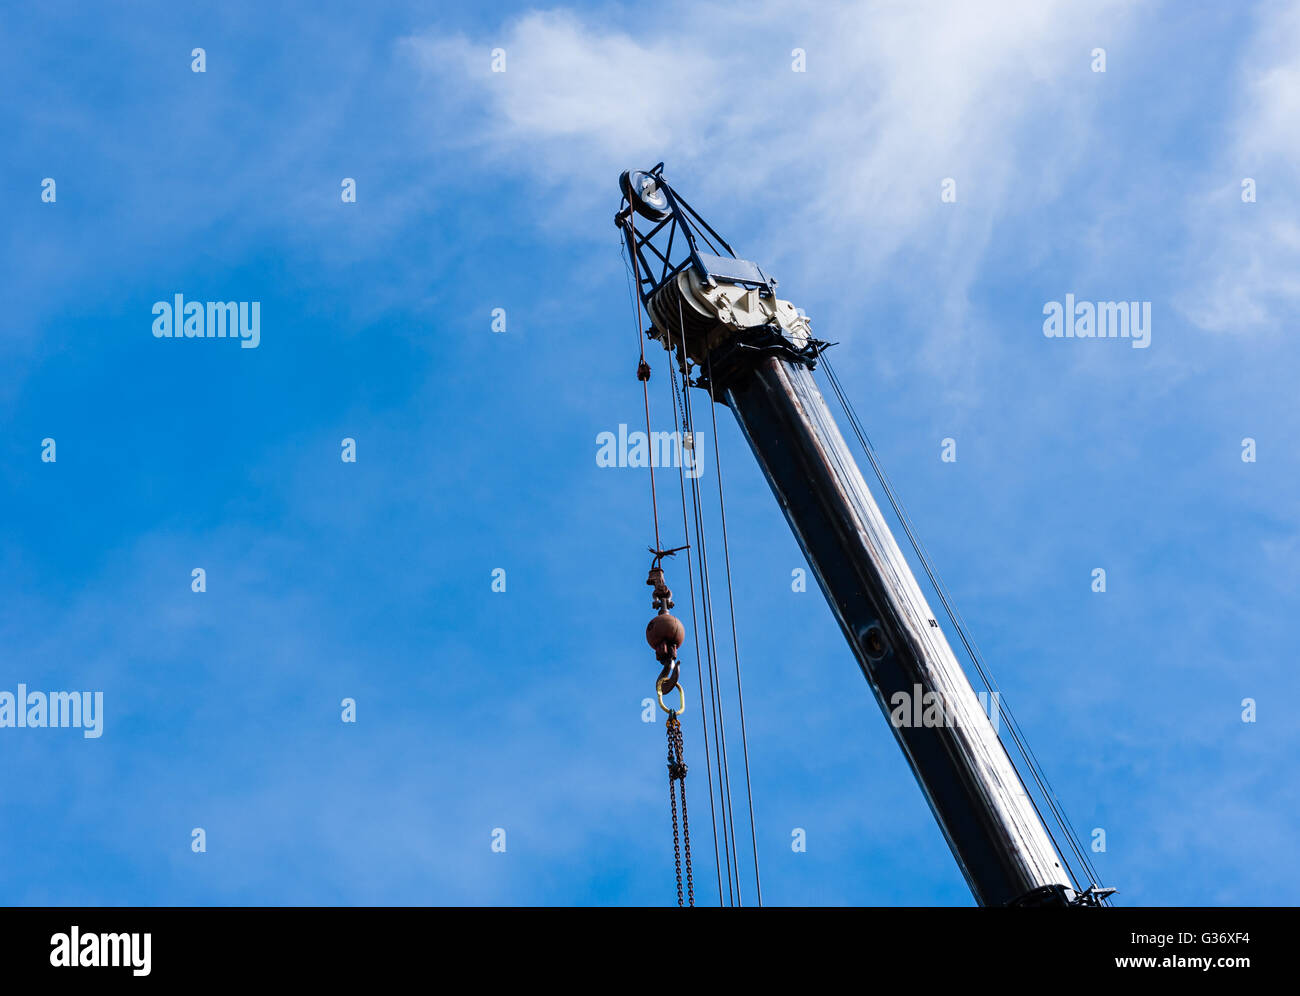 In alto di grandi pesanti gru industriali estesa nel cielo, con le pulegge e i cavi che pendono dalla parte superiore con peso e catene. Foto Stock